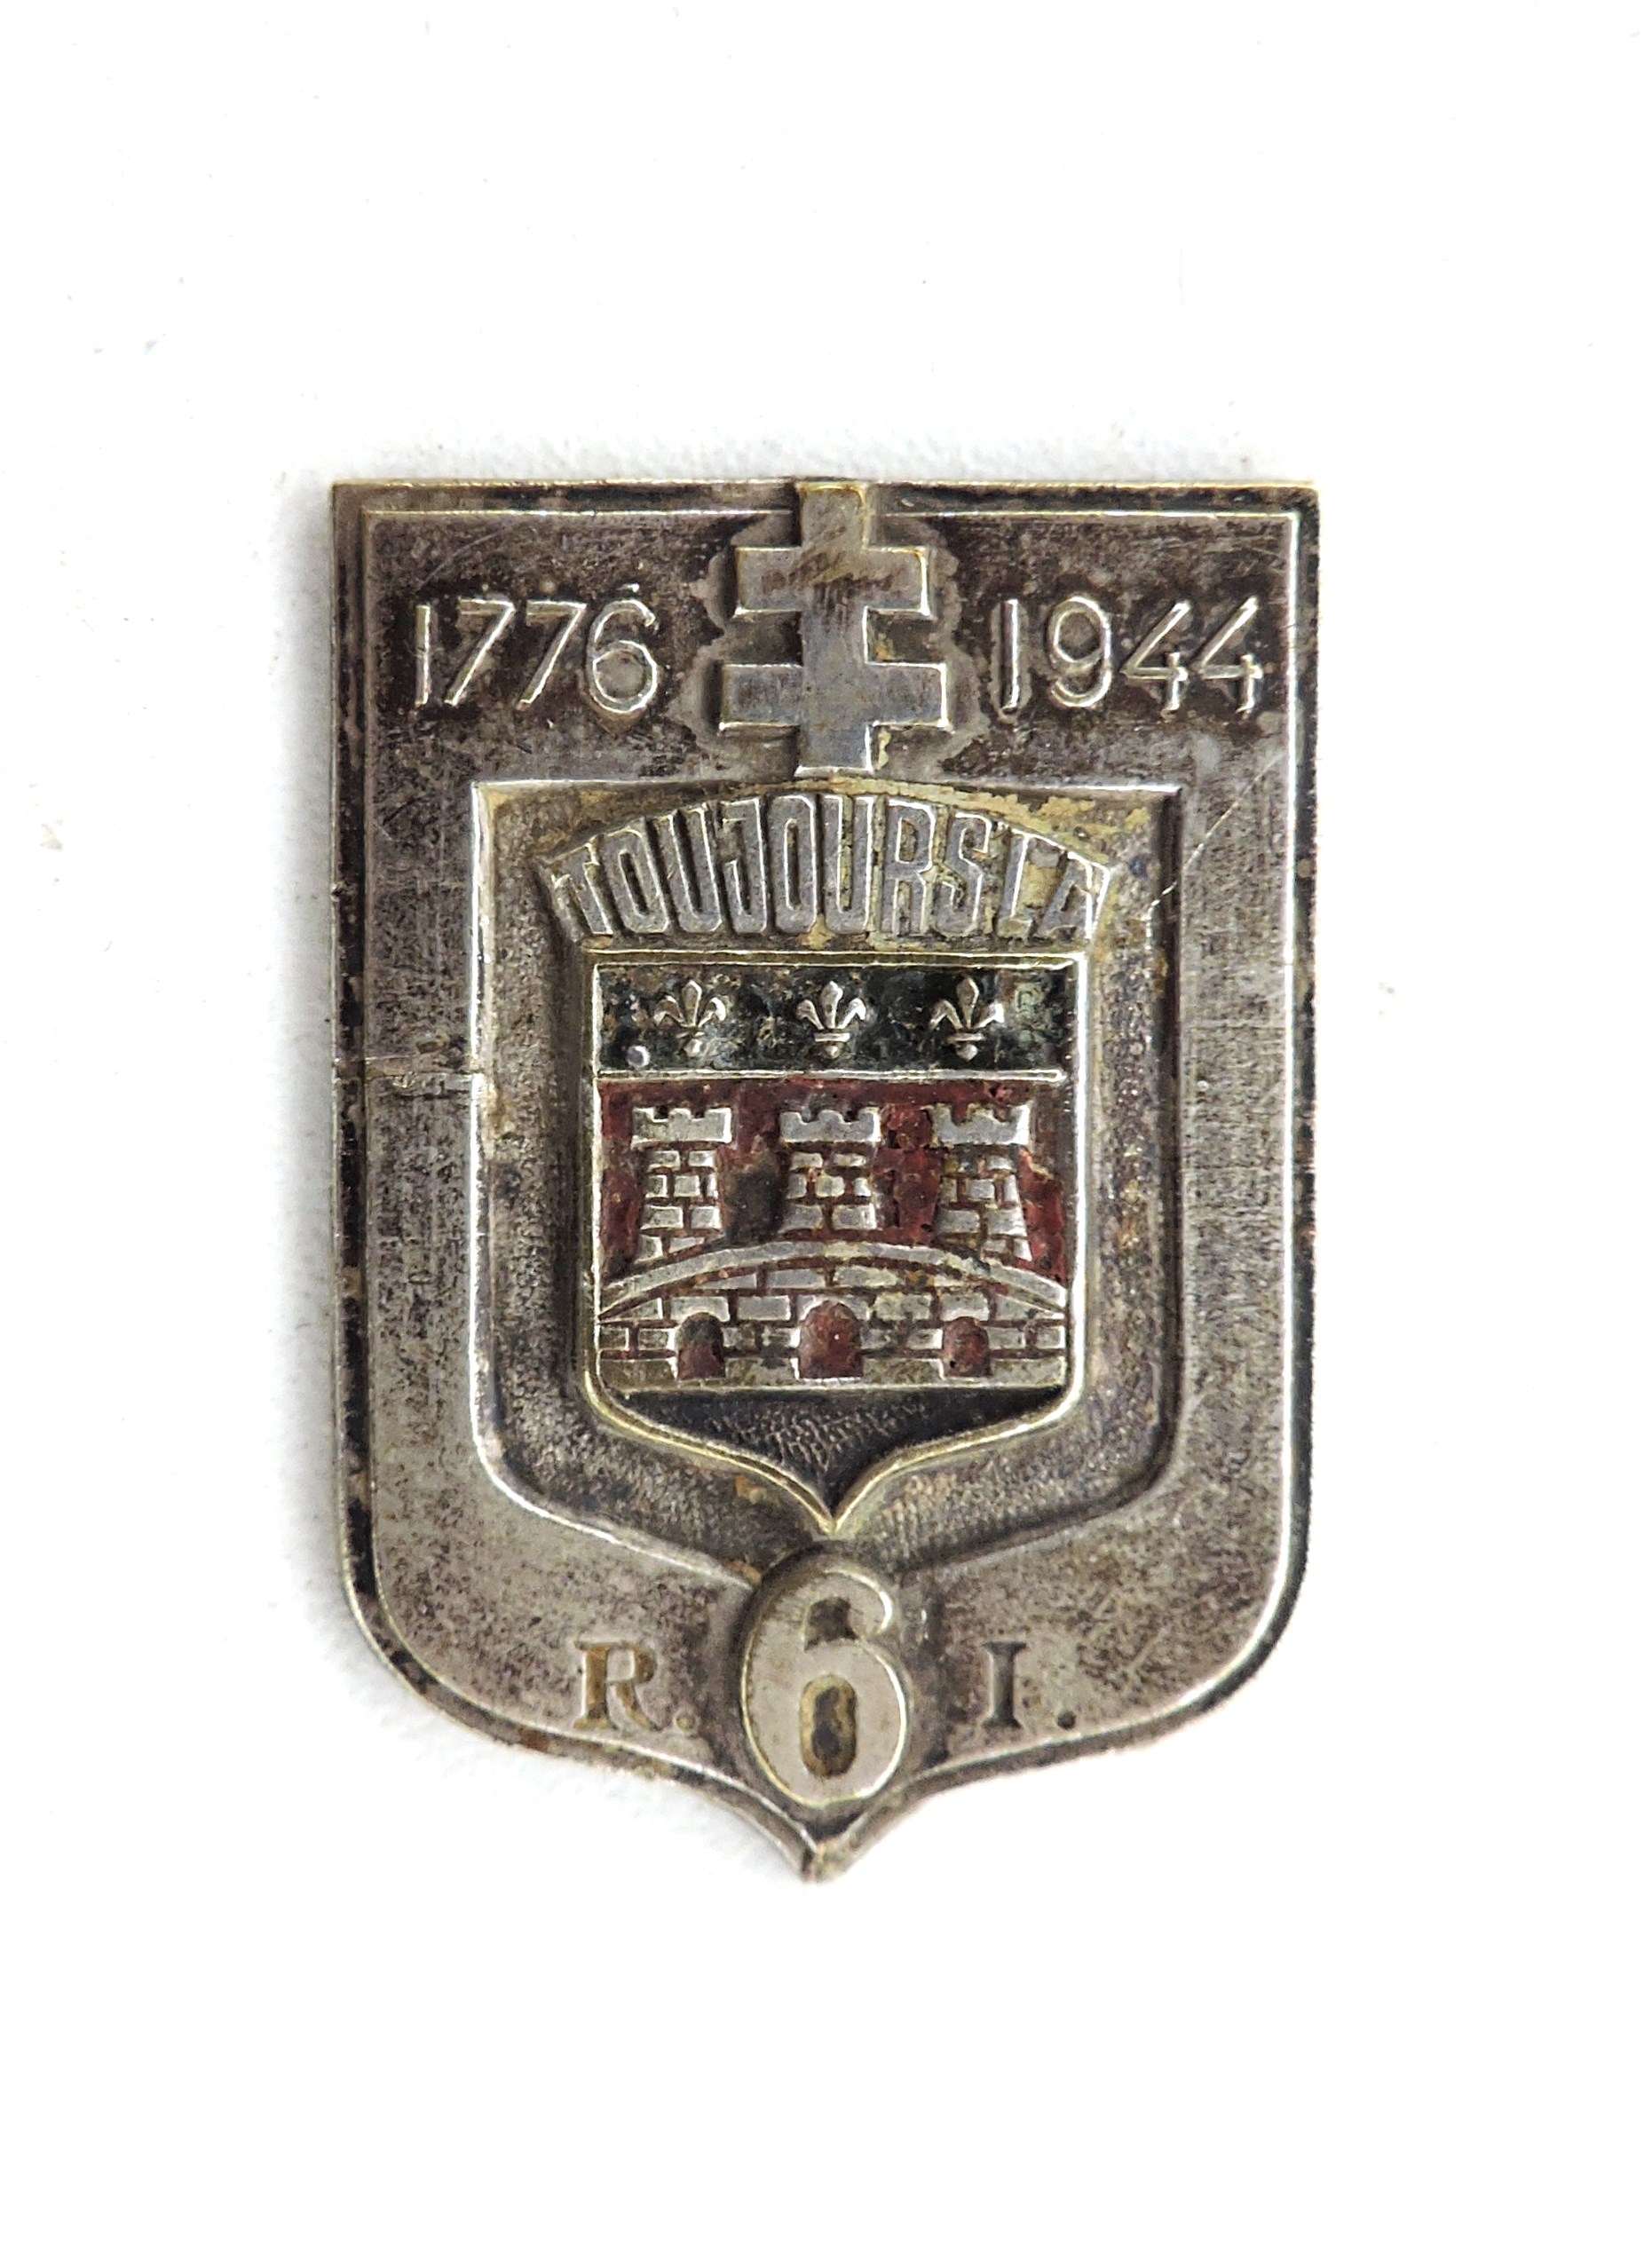 6° Régiment d'Infanterie 1944 peint